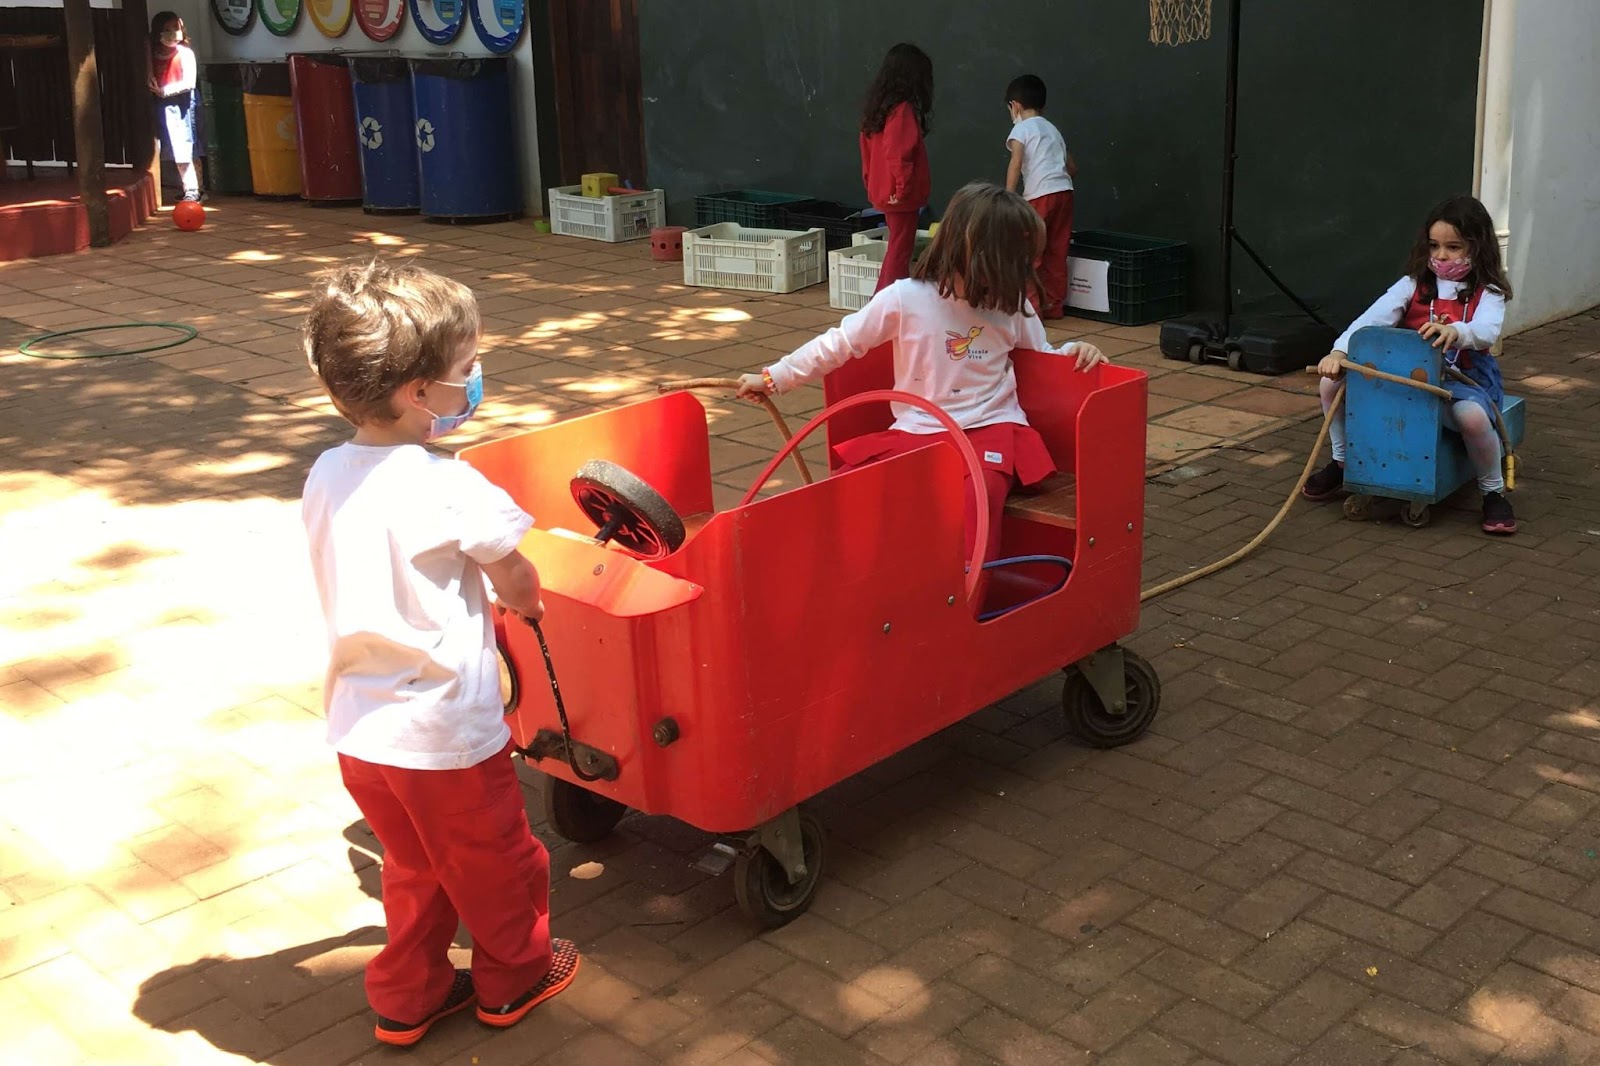 A imagem mostra 3 crianças brincando em um jipe vermelho.